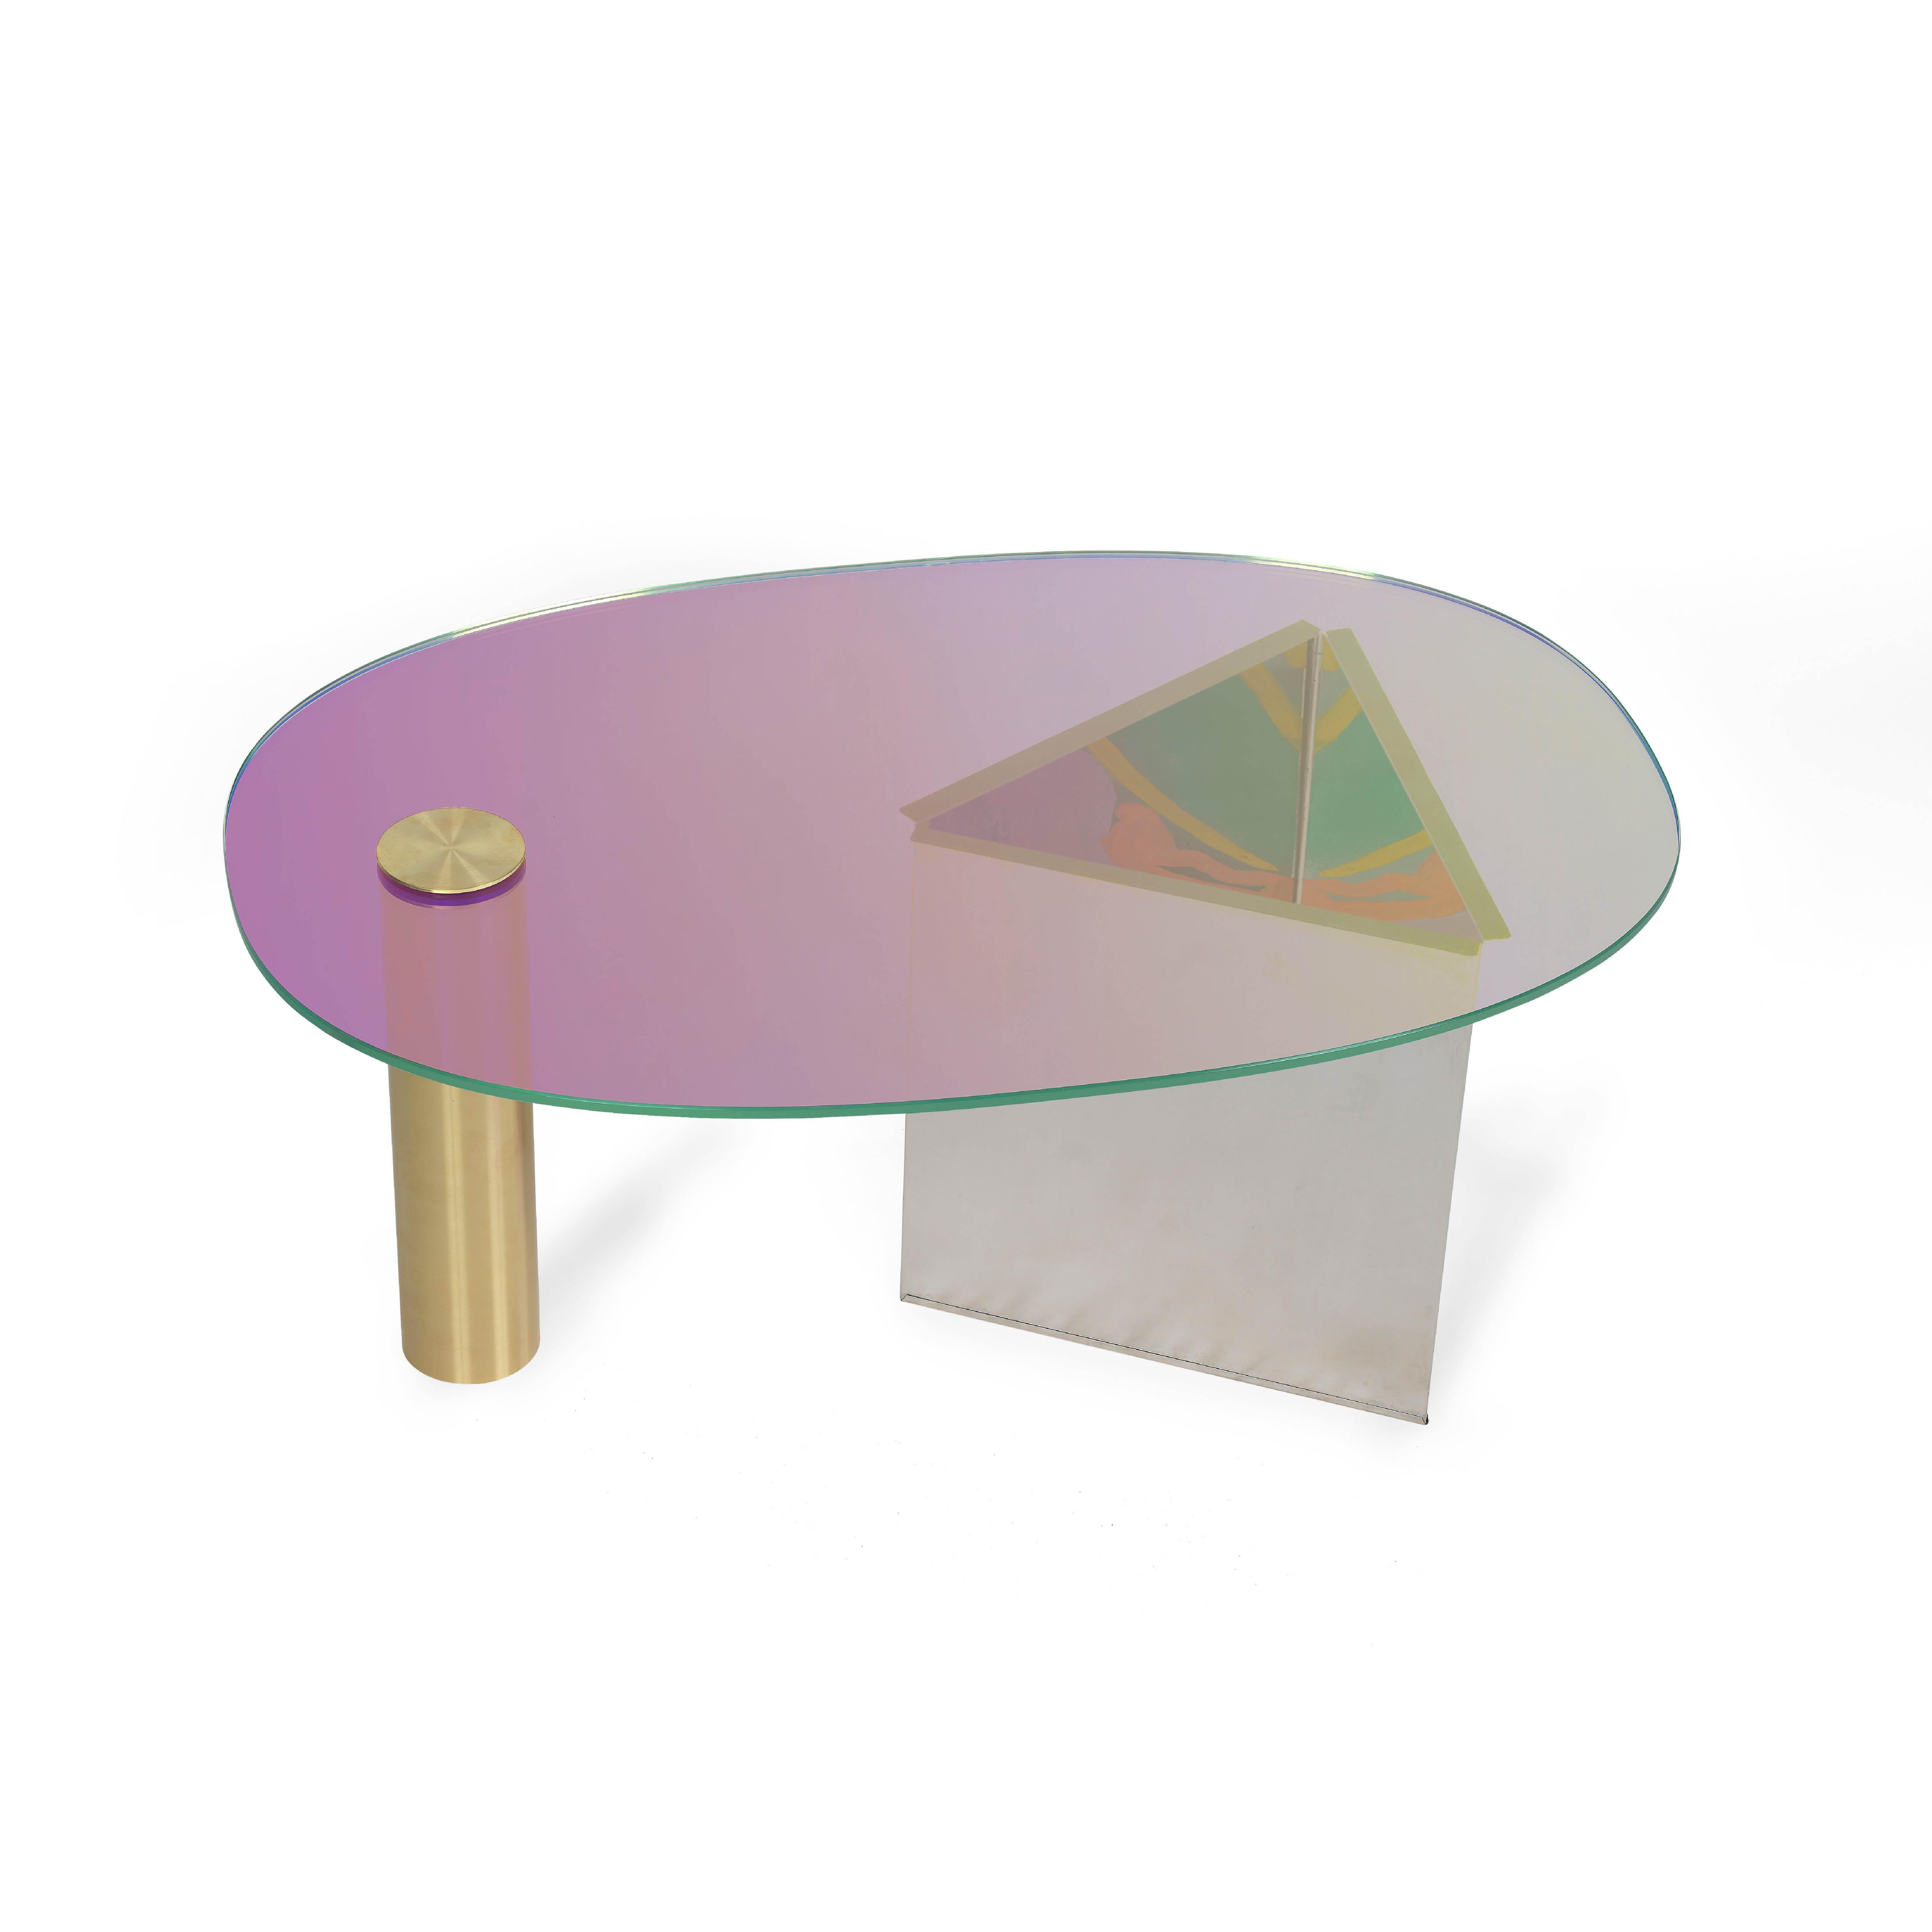 Table basse violette Ettore par Asa Jungnelius
Dimensions : 43 x 67 x 100 cm : 43 x 67 x 100 cm
MATERIAL : Verre dichroïque, laiton et acier inoxydable.

Chaque table est peinte individuellement par l'artiste. Edition limitée

Åsa Jungnelius est une